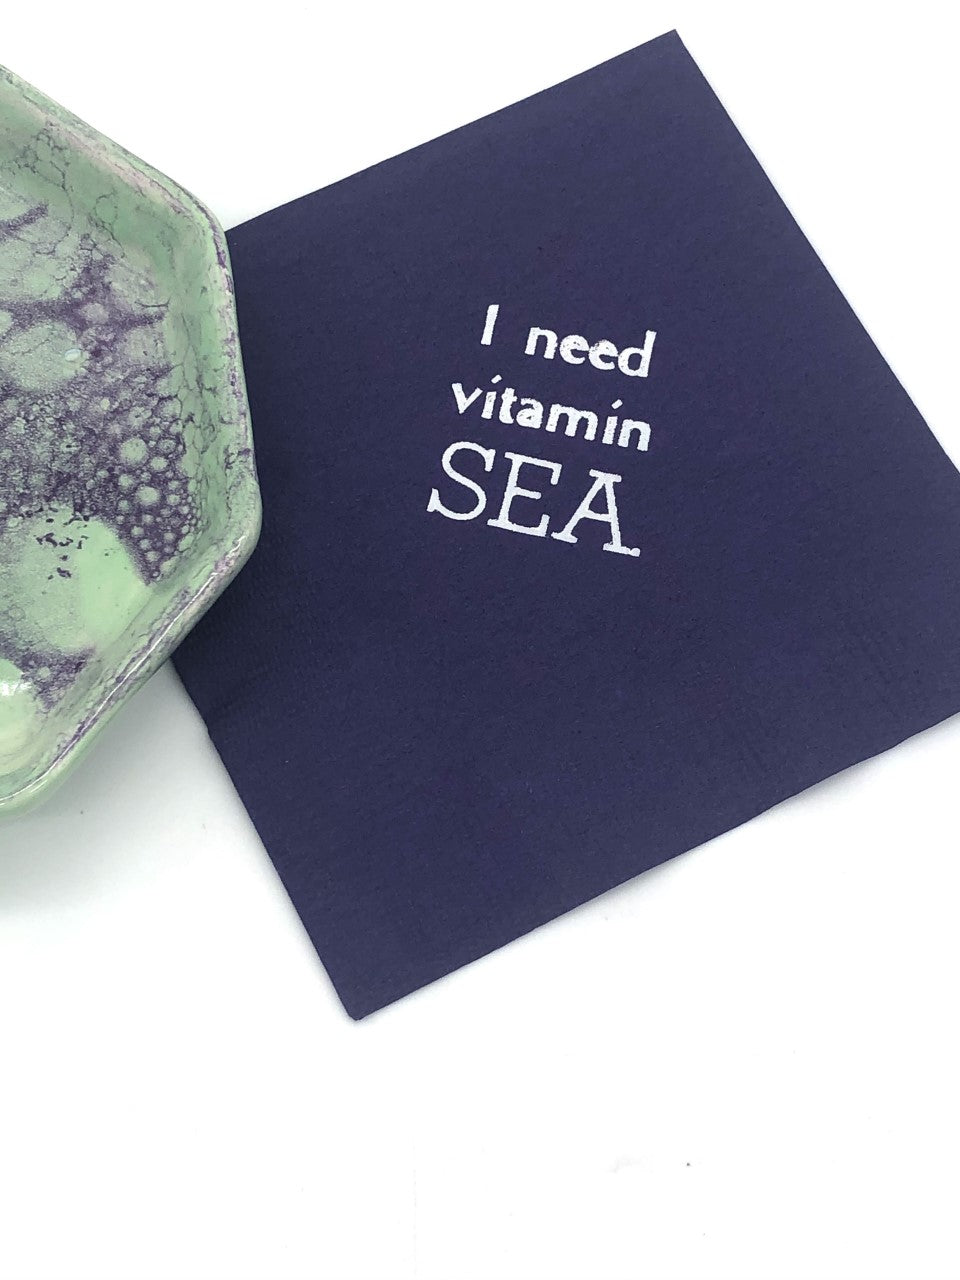 Navy cocktail napkin with silver I need vitamin SEA slogan